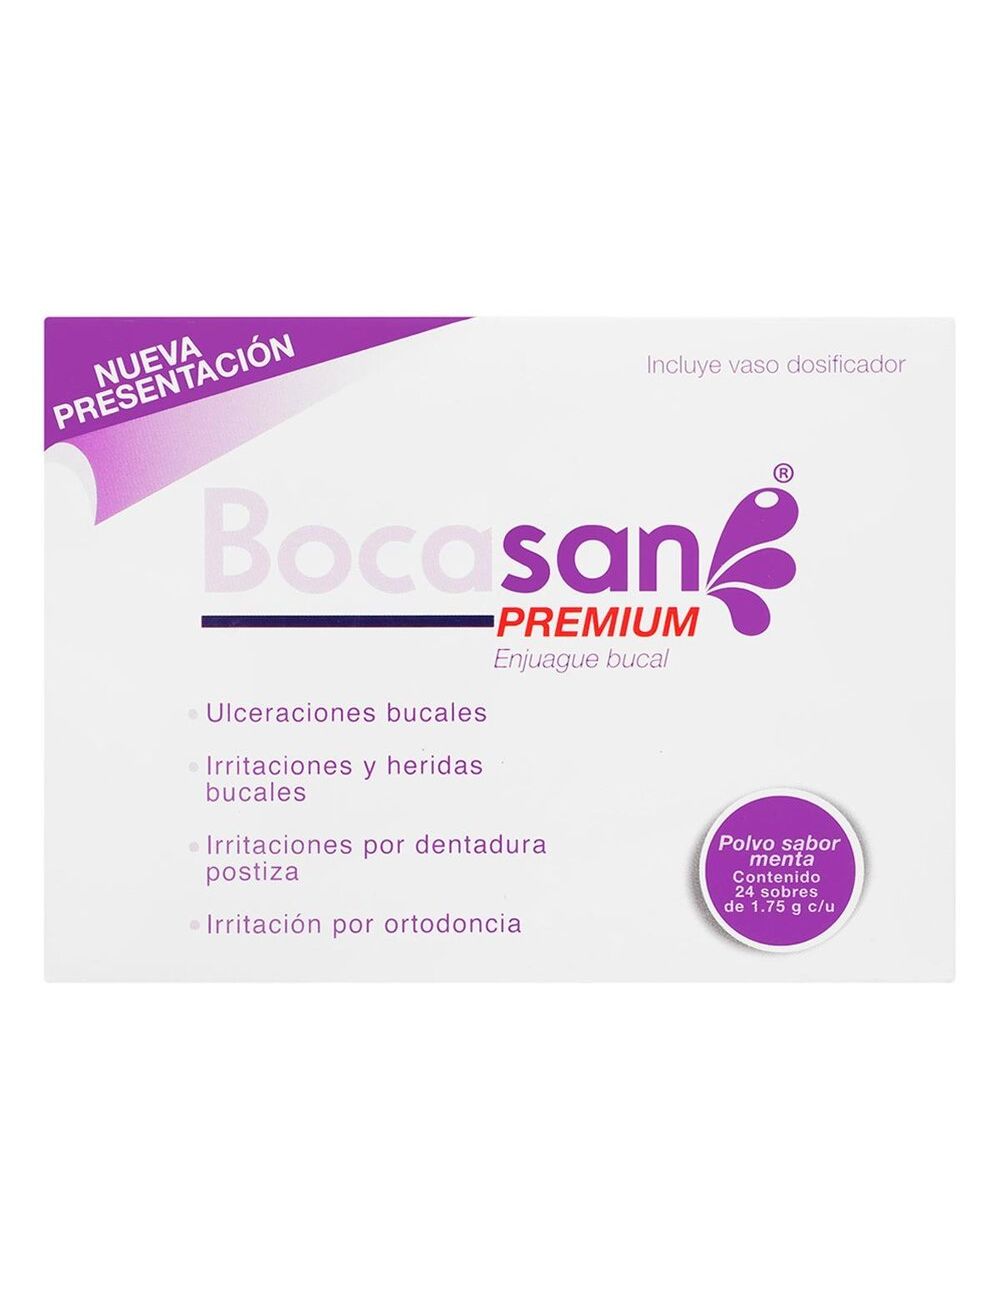 Bocasan Premium 1.22/0.52 g Caja Con 24 Sobres